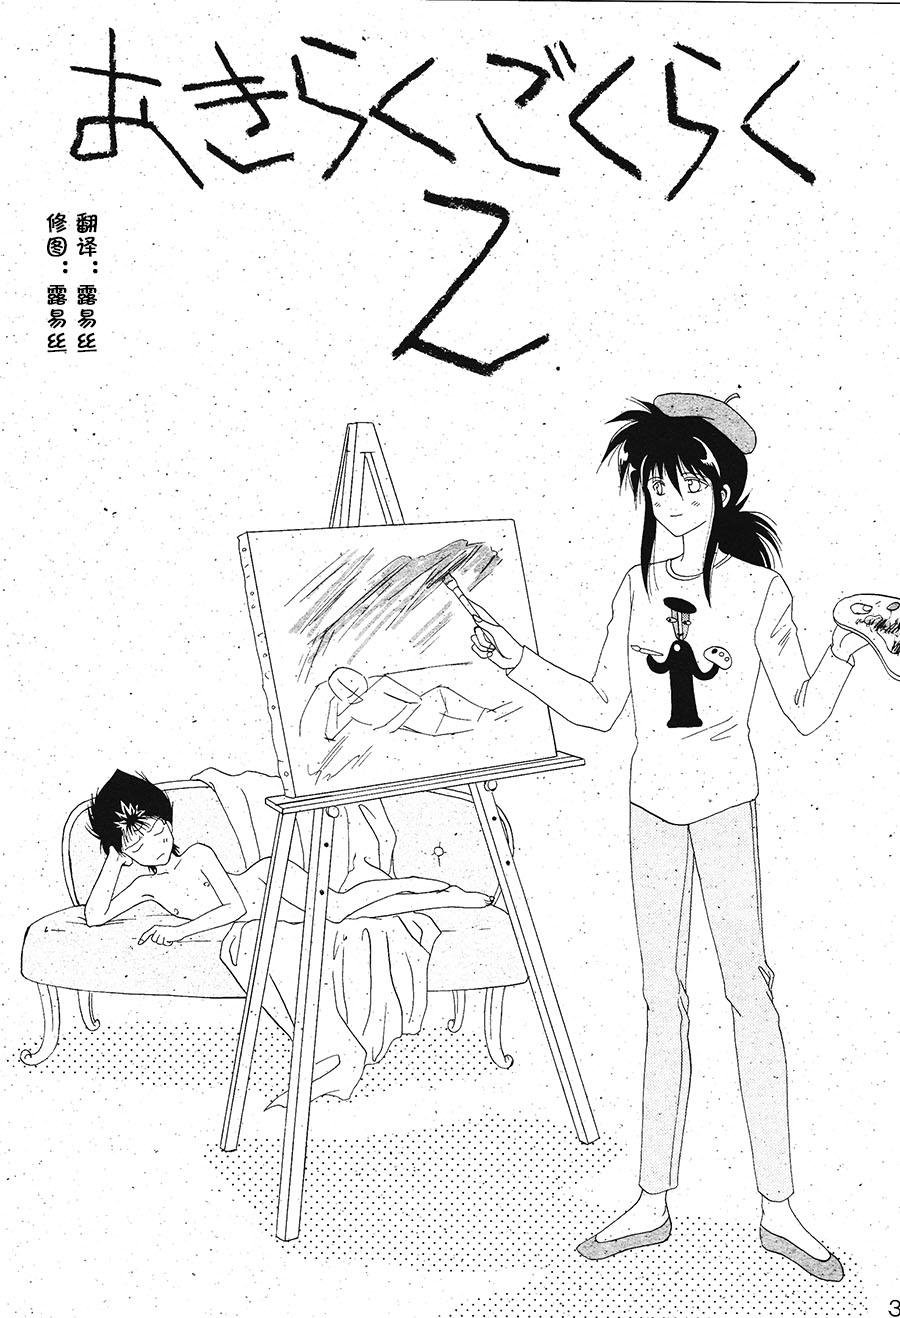 【漫画】ryu-华/雅ゆたか《轻松极乐2》 Img11740